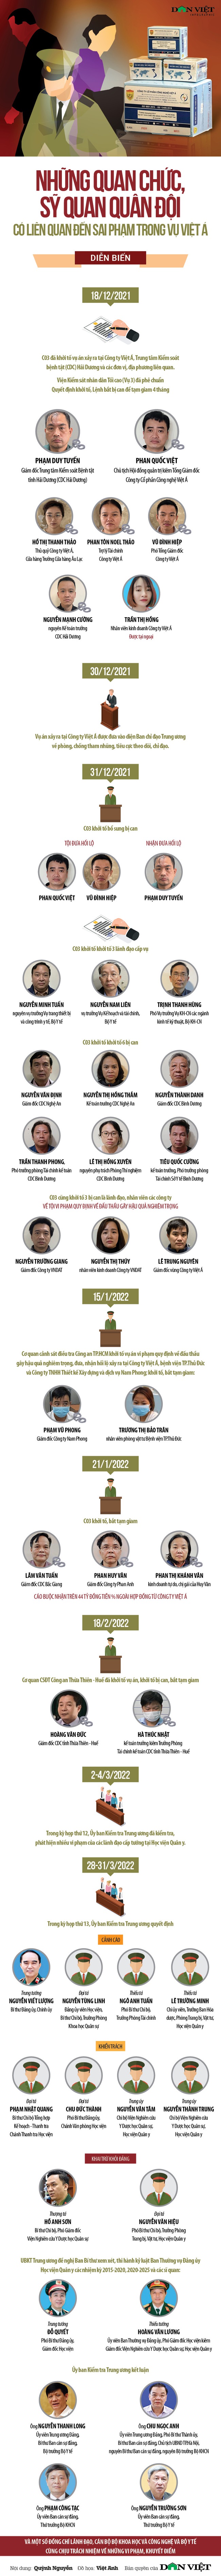 [Infographics] Những quan chức, sỹ quan quân đội có liên quan đến sai phạm trong vụ Việt Á - Ảnh 1.